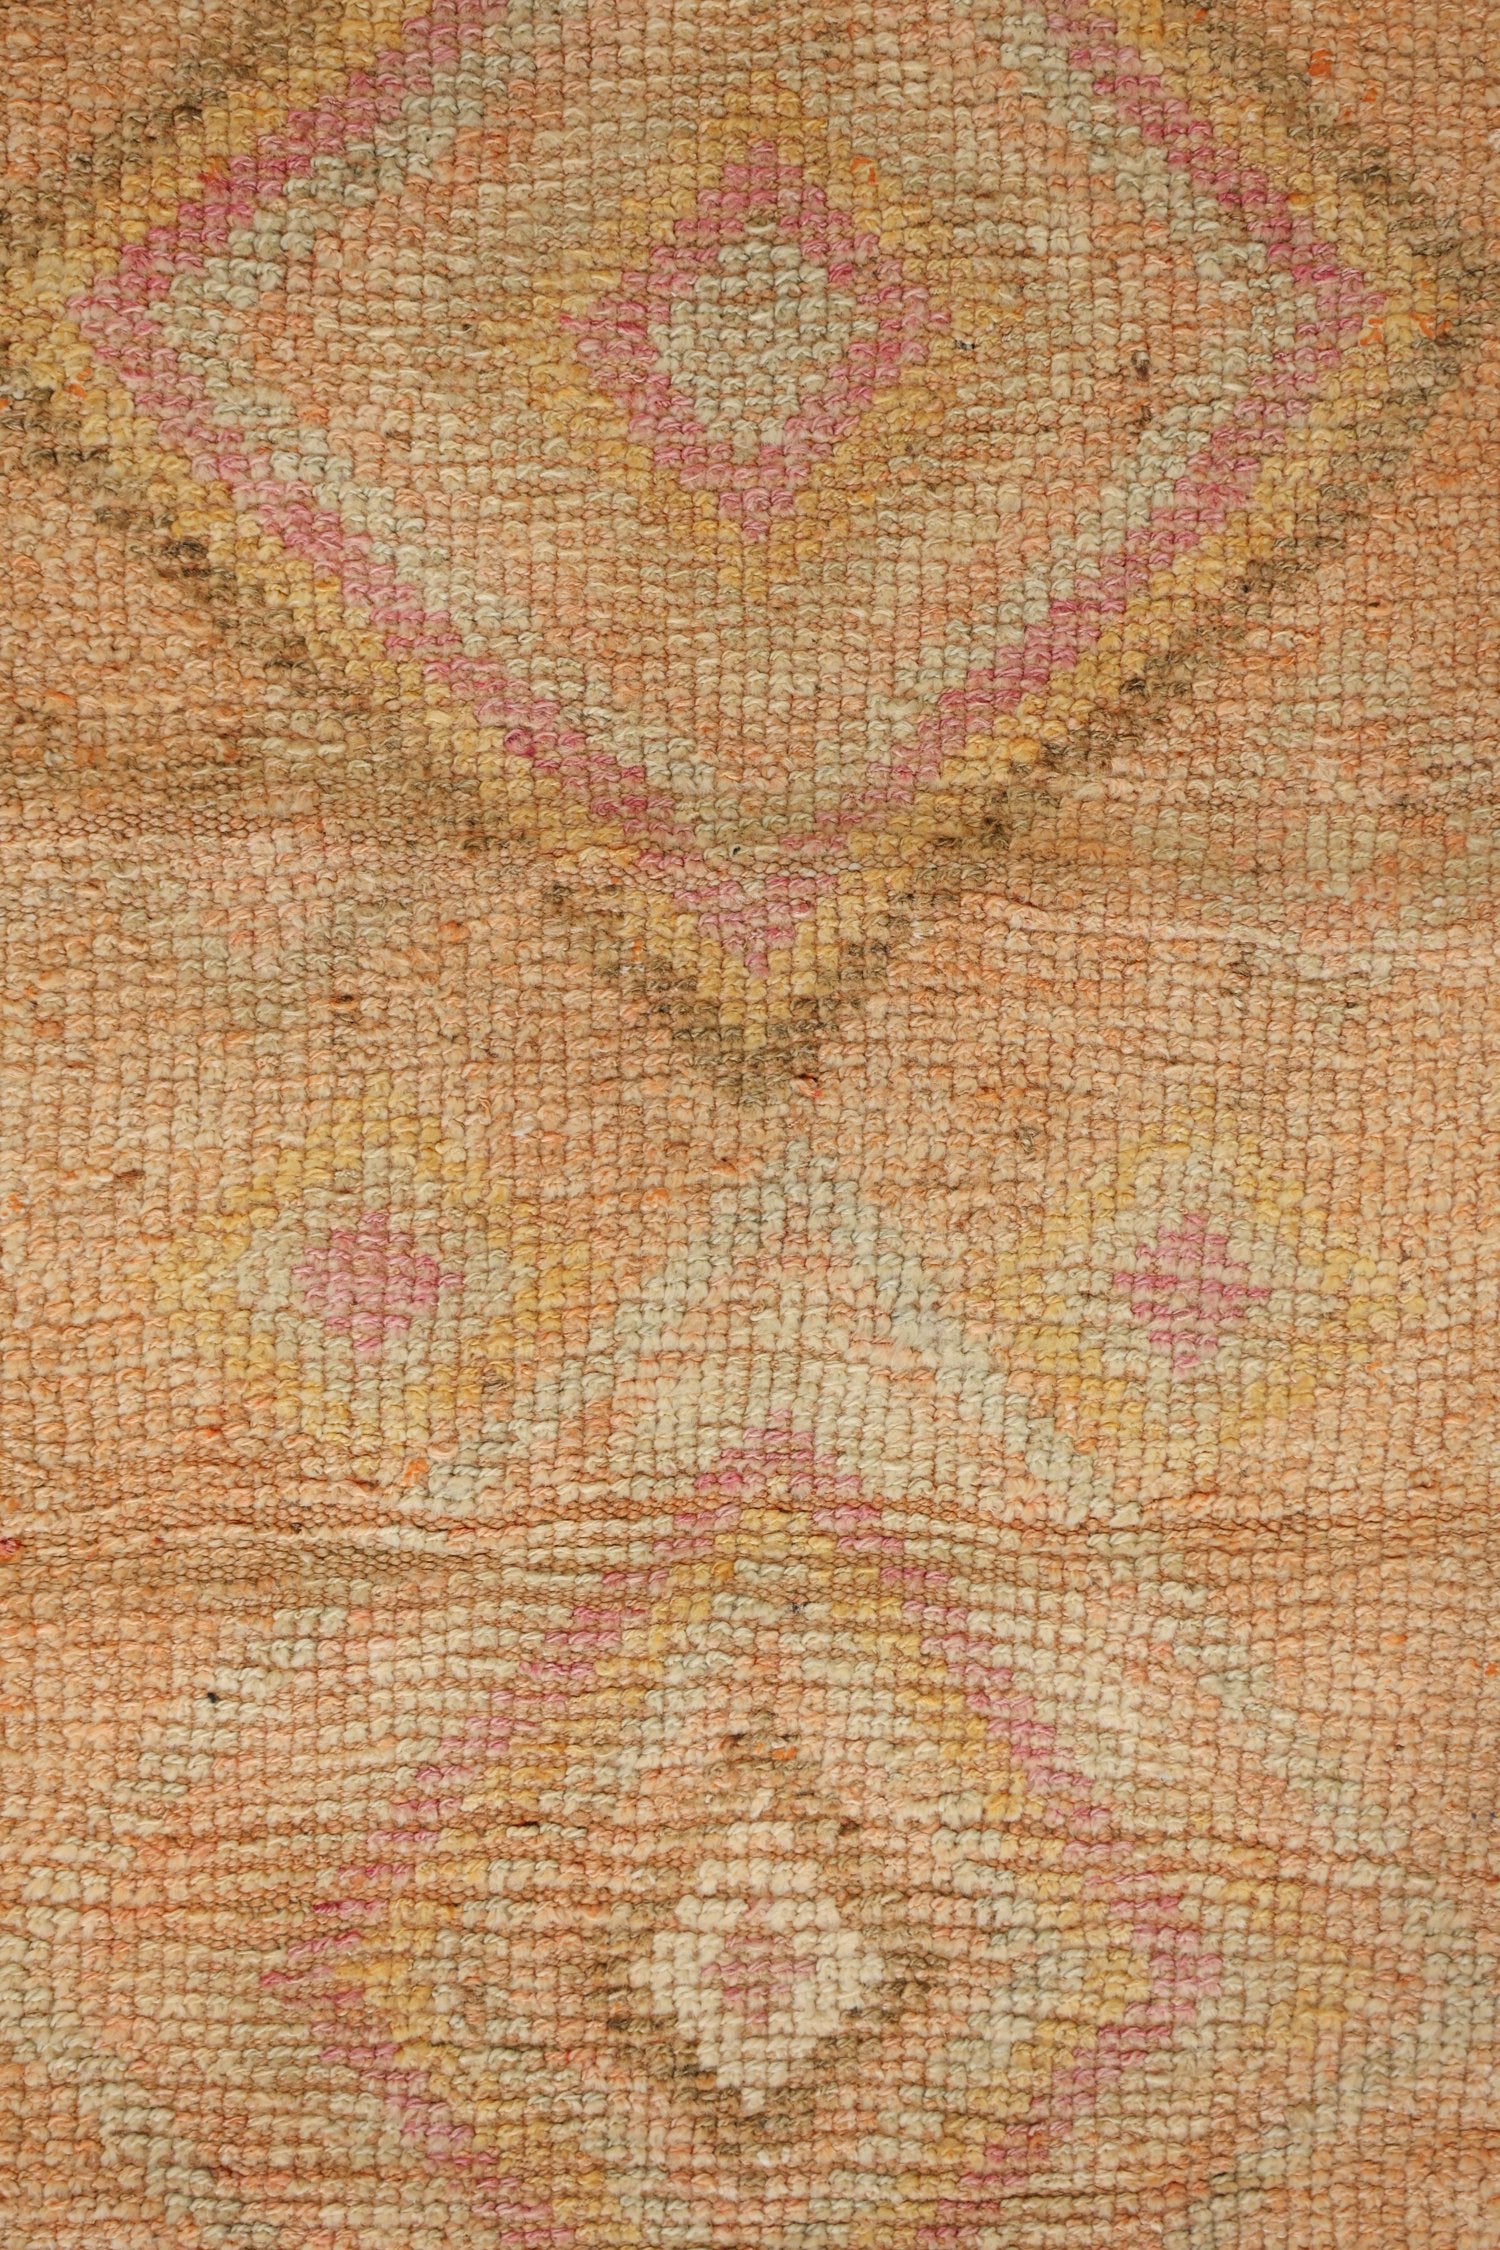 Vintage Herki Handwoven Tribal Rug, J71007